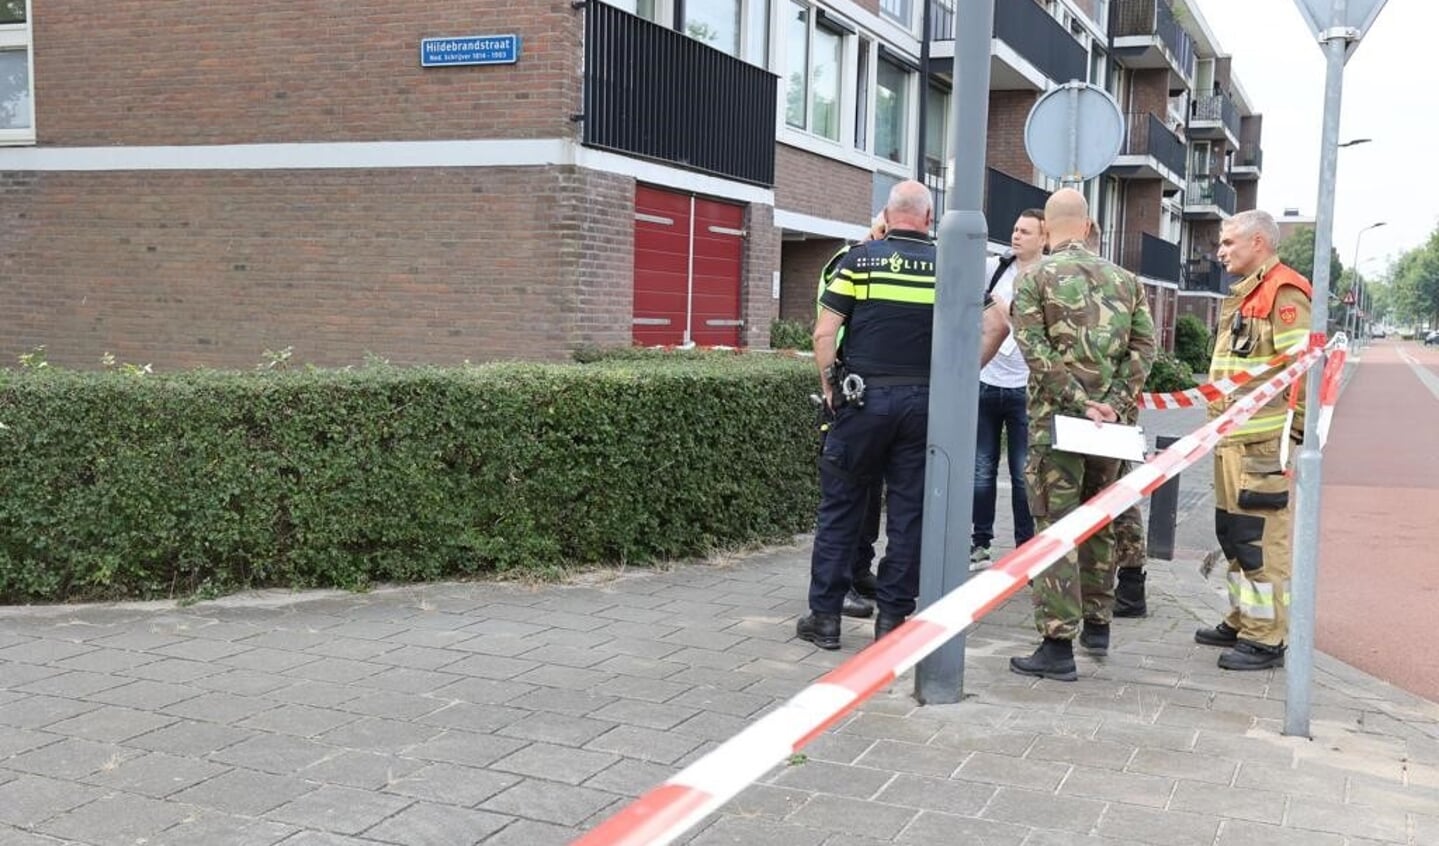 Acht panden in de Hildebrandstraat in Den Bosch zijn vanochtend ontruimd nadat er een handgranaat was aangetroffen op de gevel van een zonnestudio.